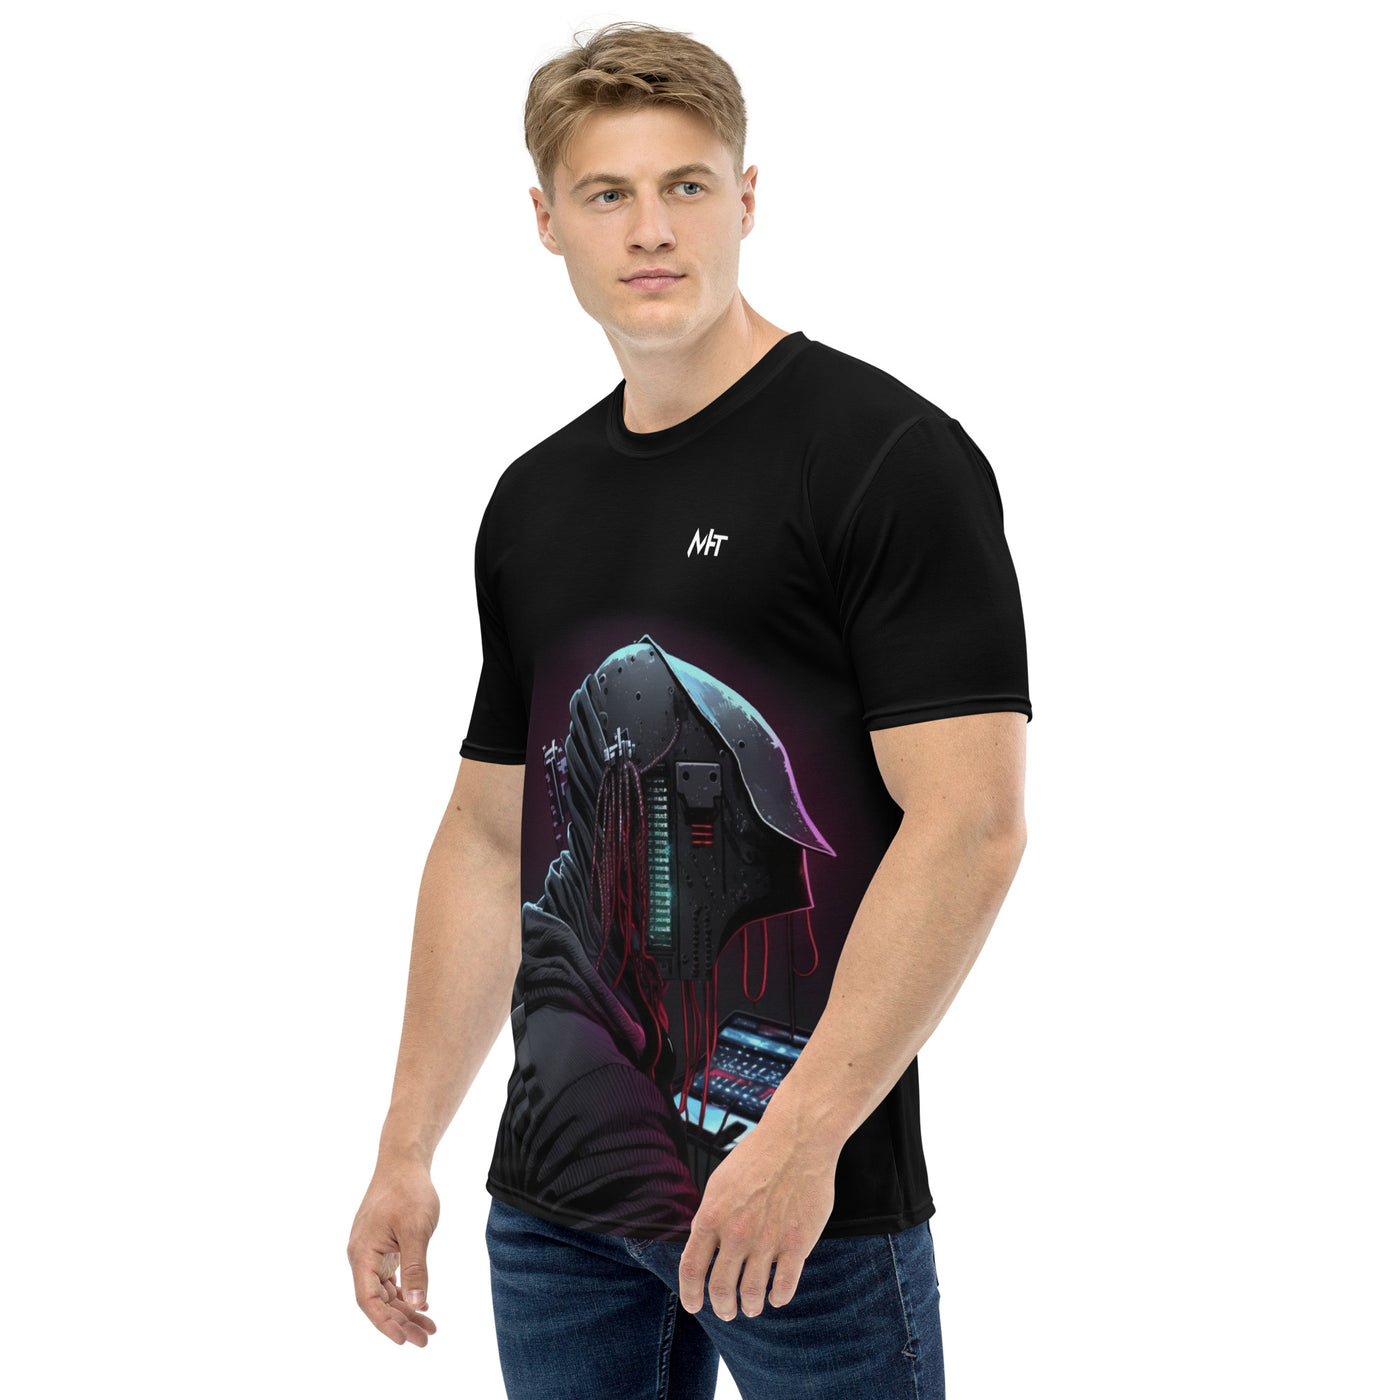 CyberWare Assassin V4 - Men's t-shirt